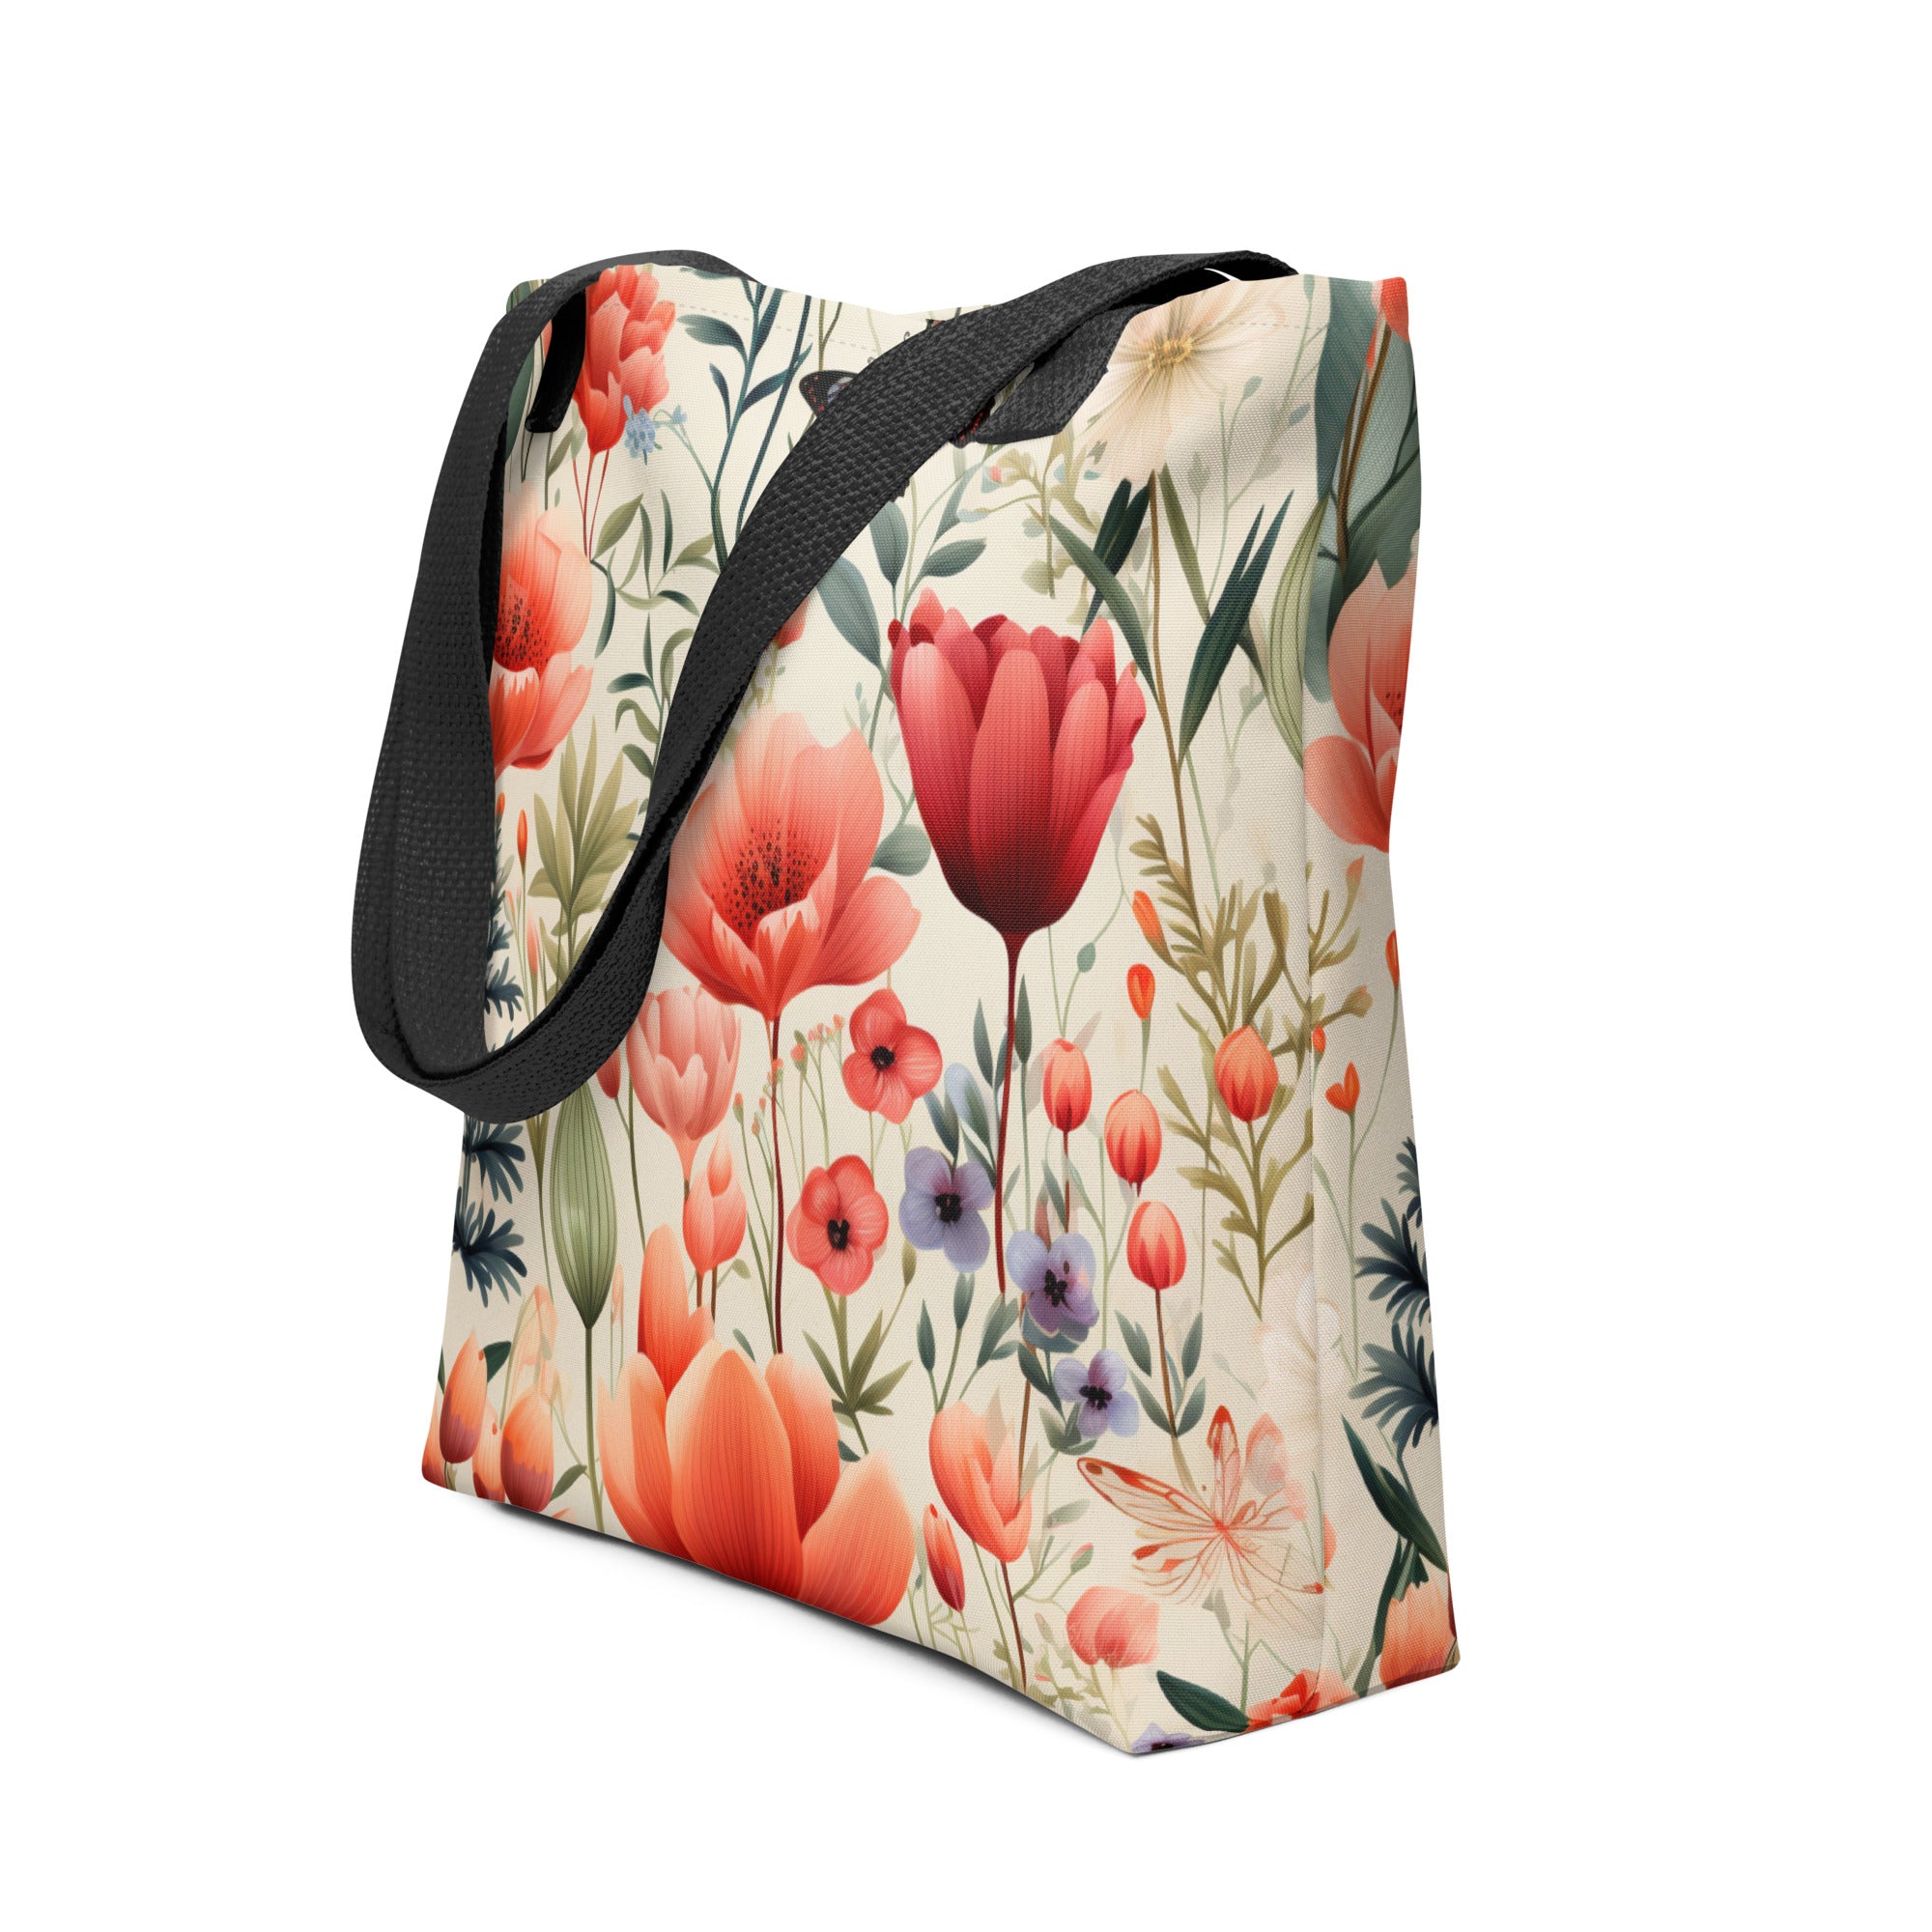 Tote bag- Flower Garden 01